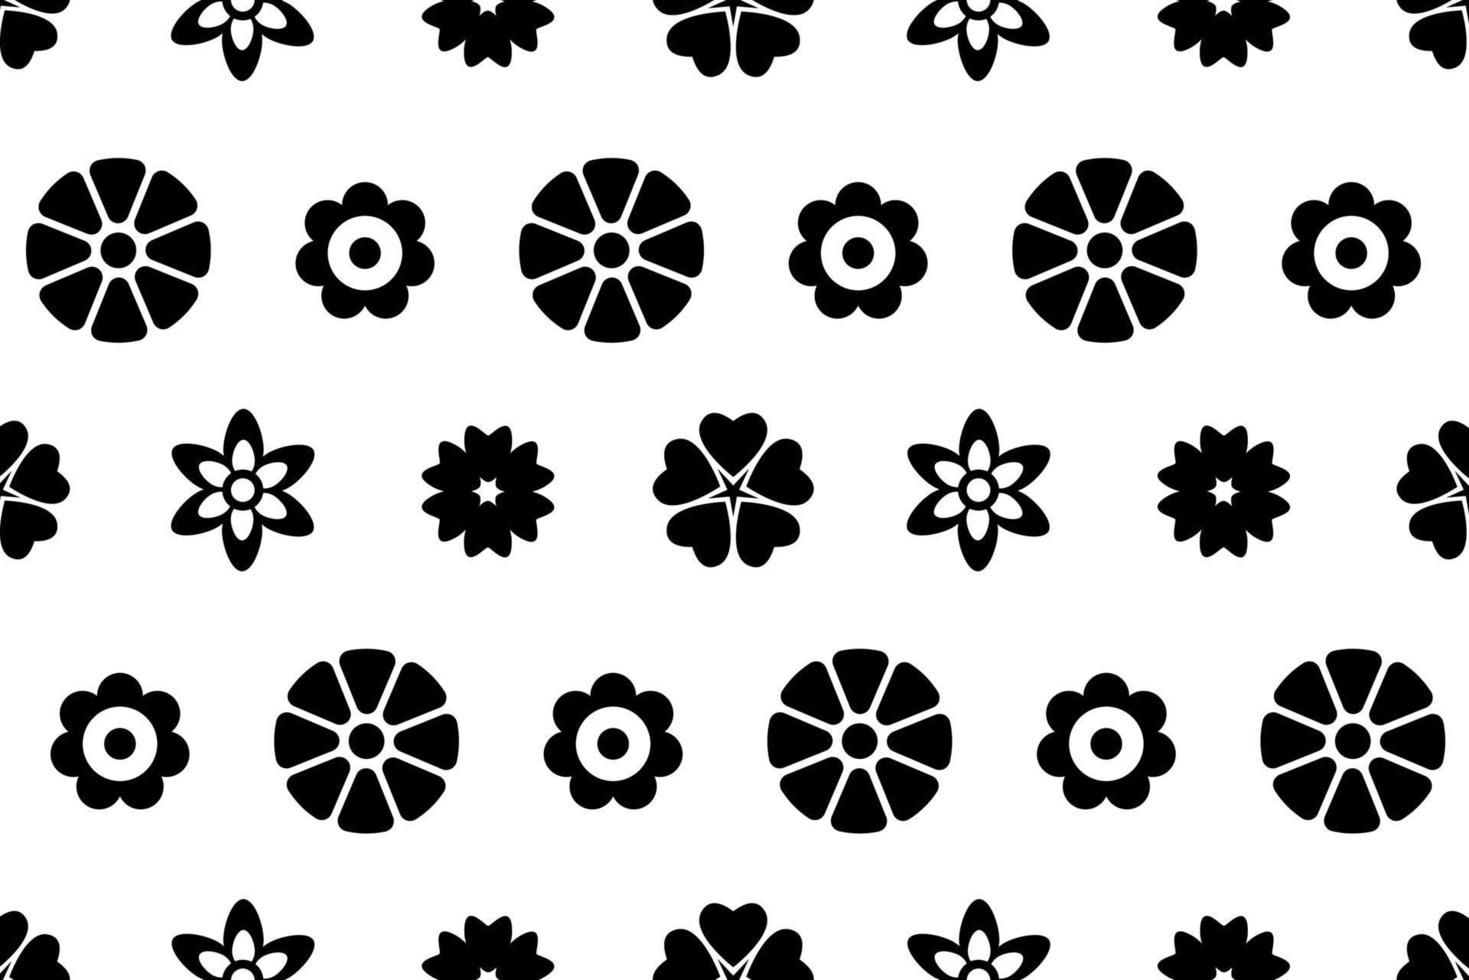 platt blommönster. svarta och vita blommor upprepande mönster. vektor kreativt mönster för inslagning, textil, täckning, tryckning och andra designprojekt.